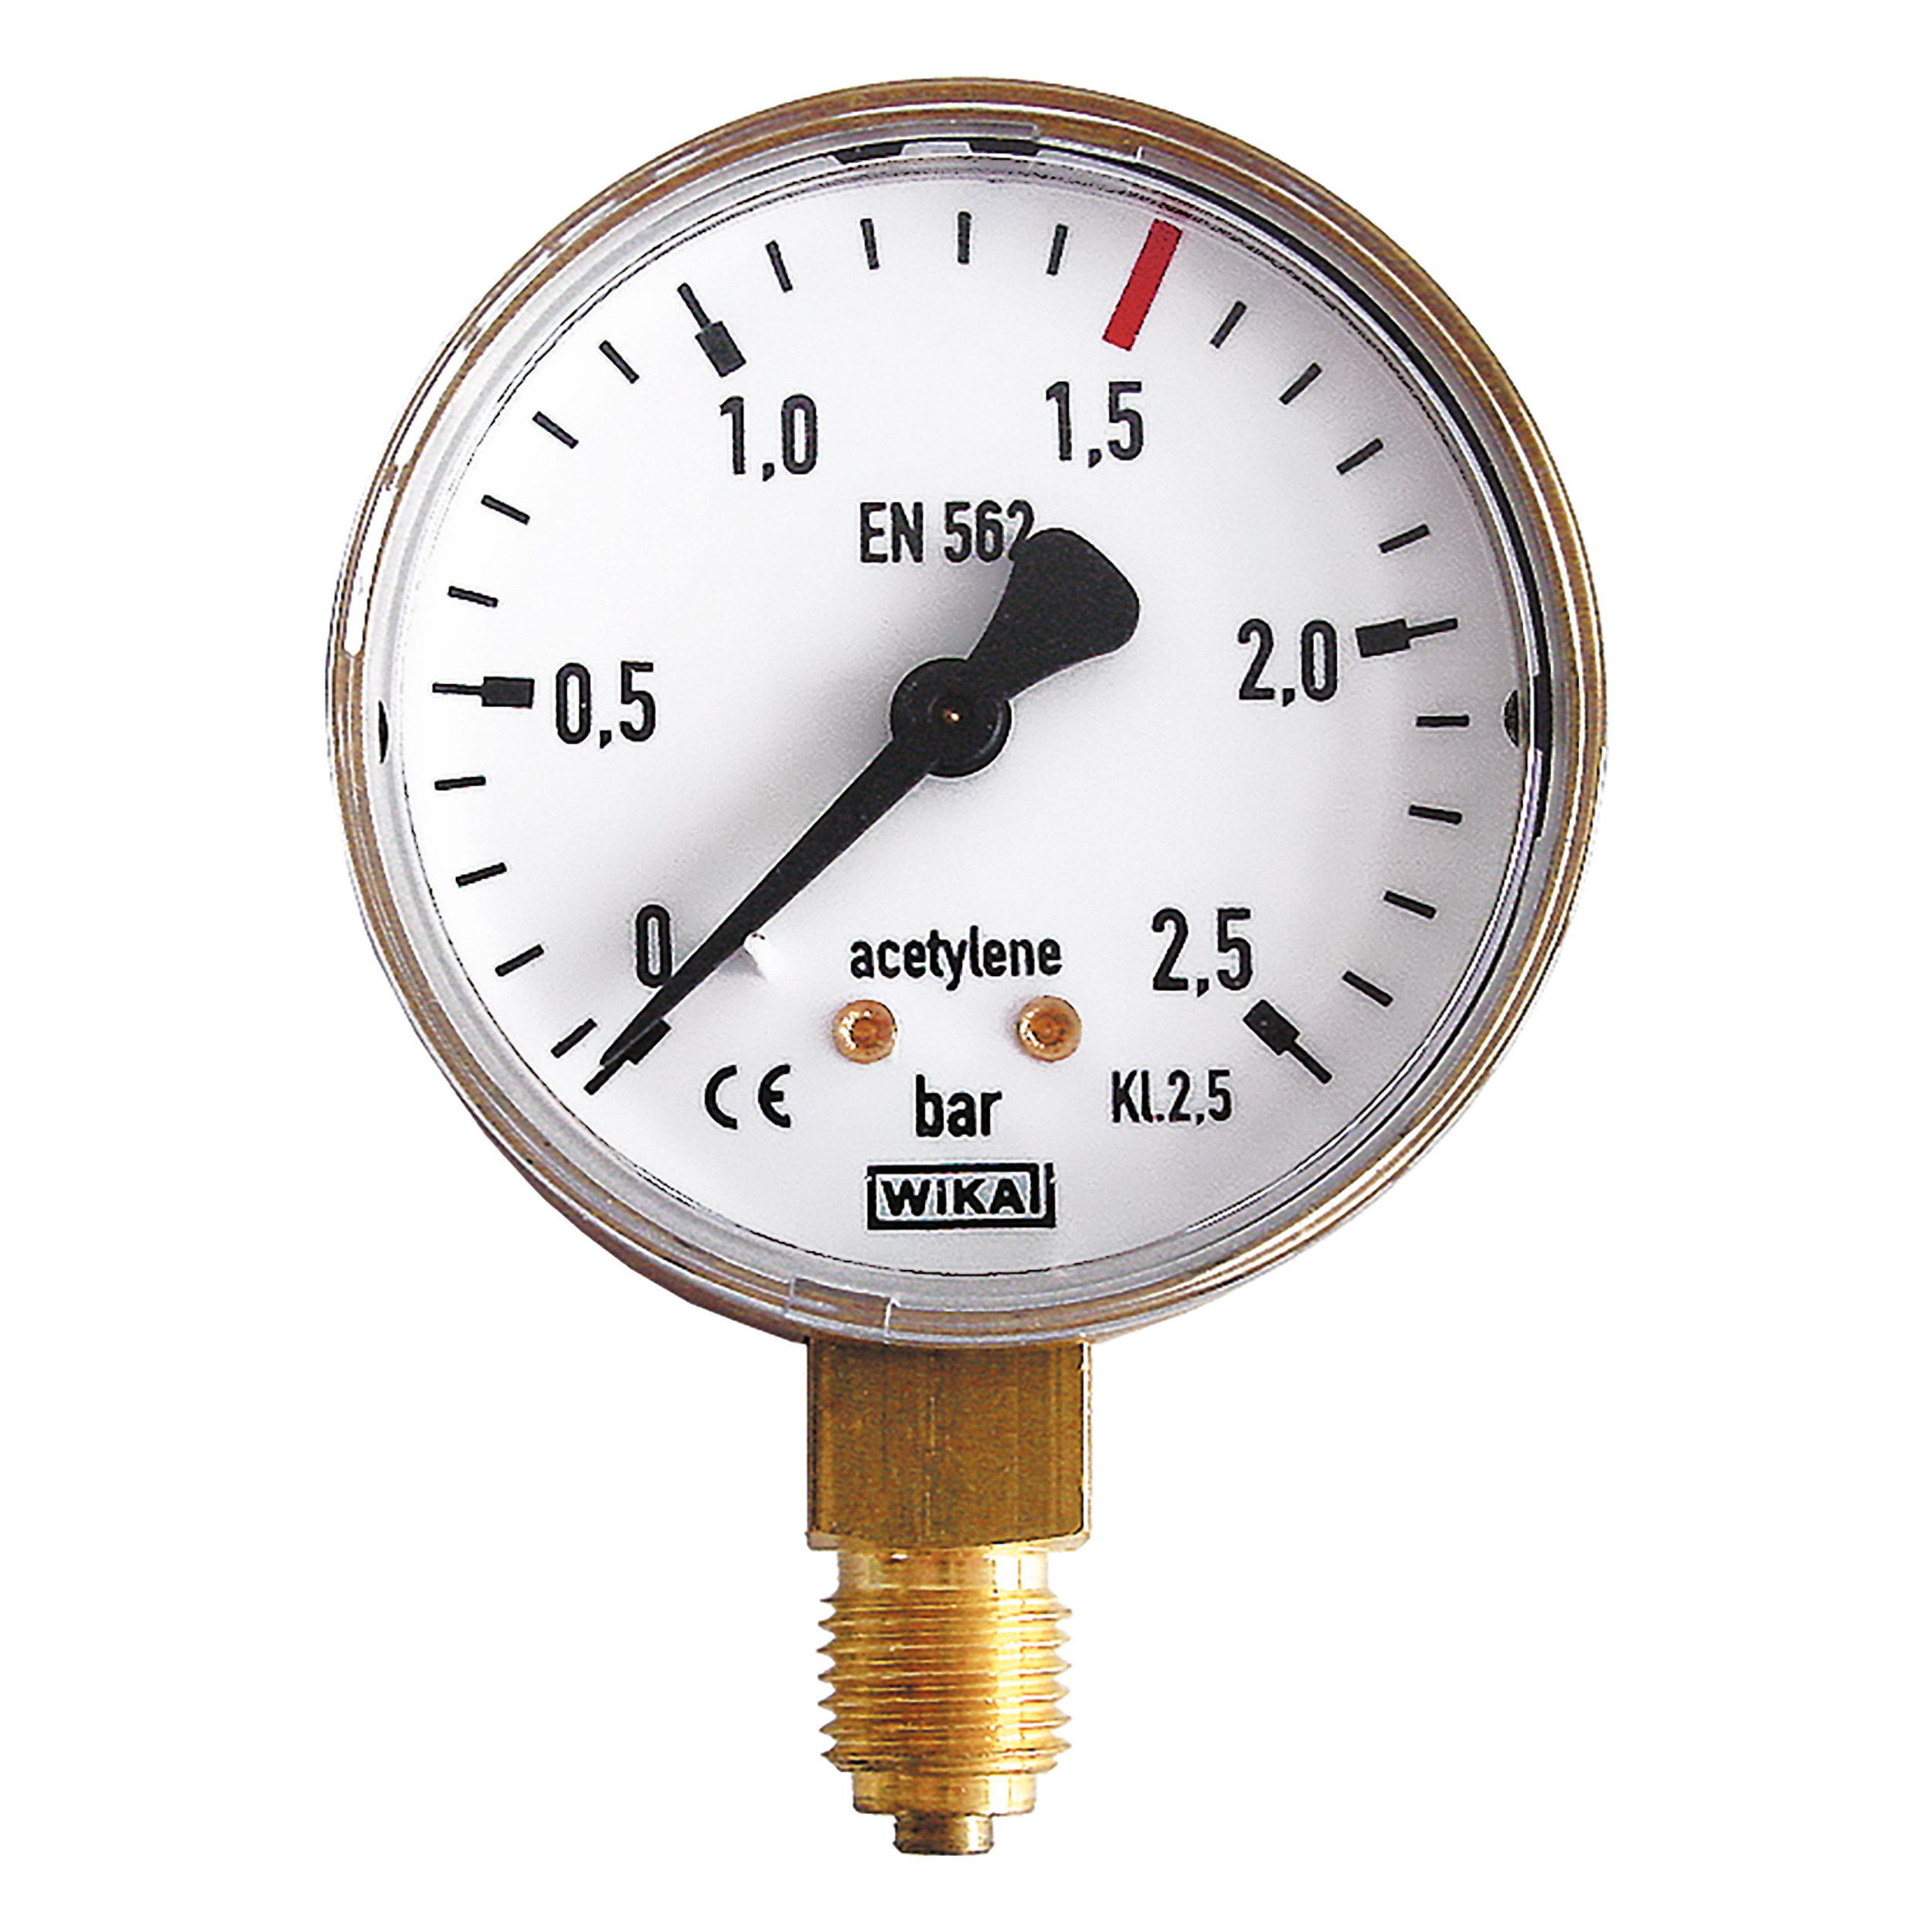 Pressure gauge for cylinder gas Ø 63, vertical, bar-scale